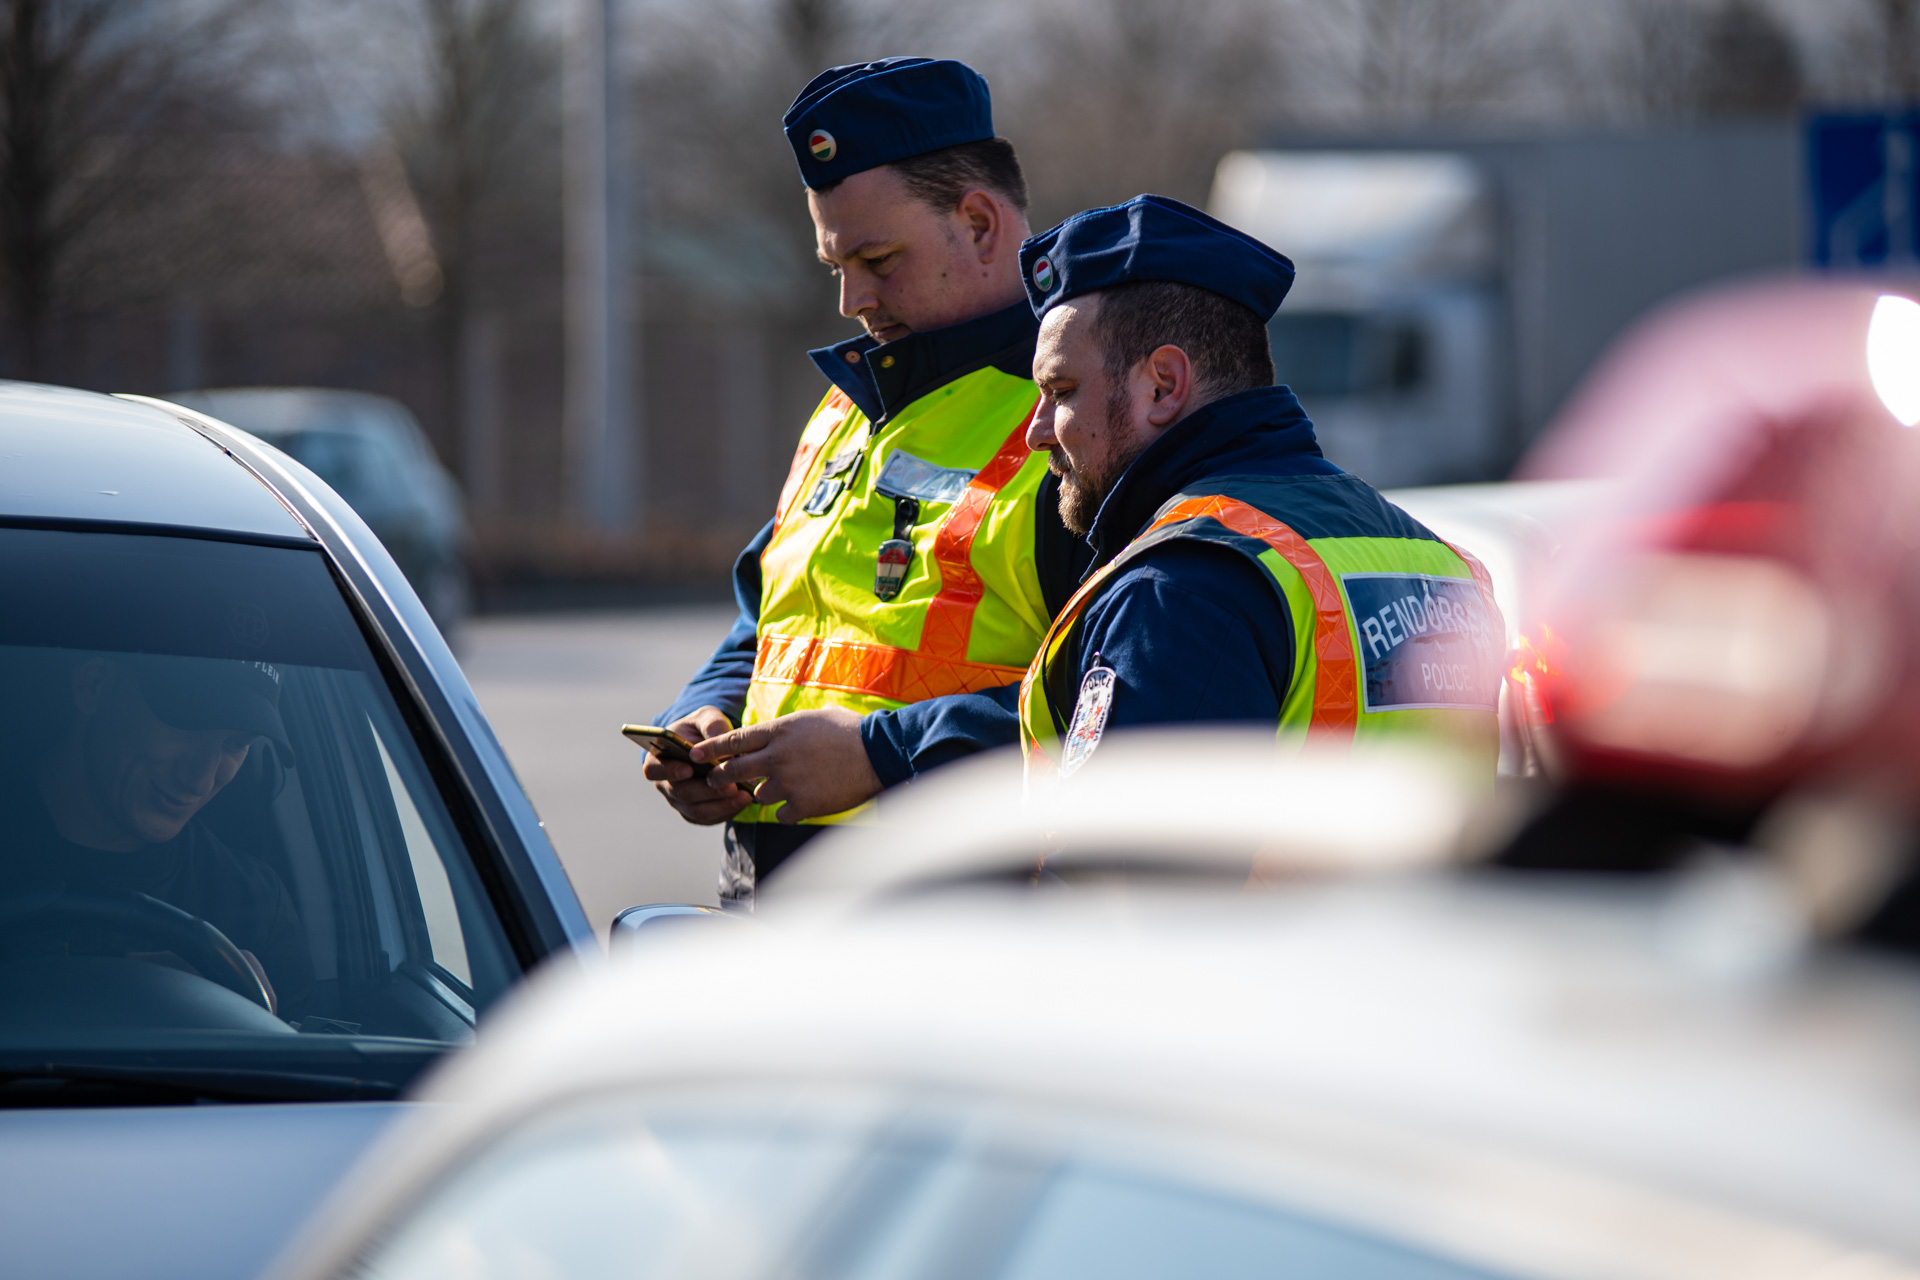 https://kolorline.hu/Roadpol — a biztonsági övek használatát ellenőrizték a héten a rendőrök